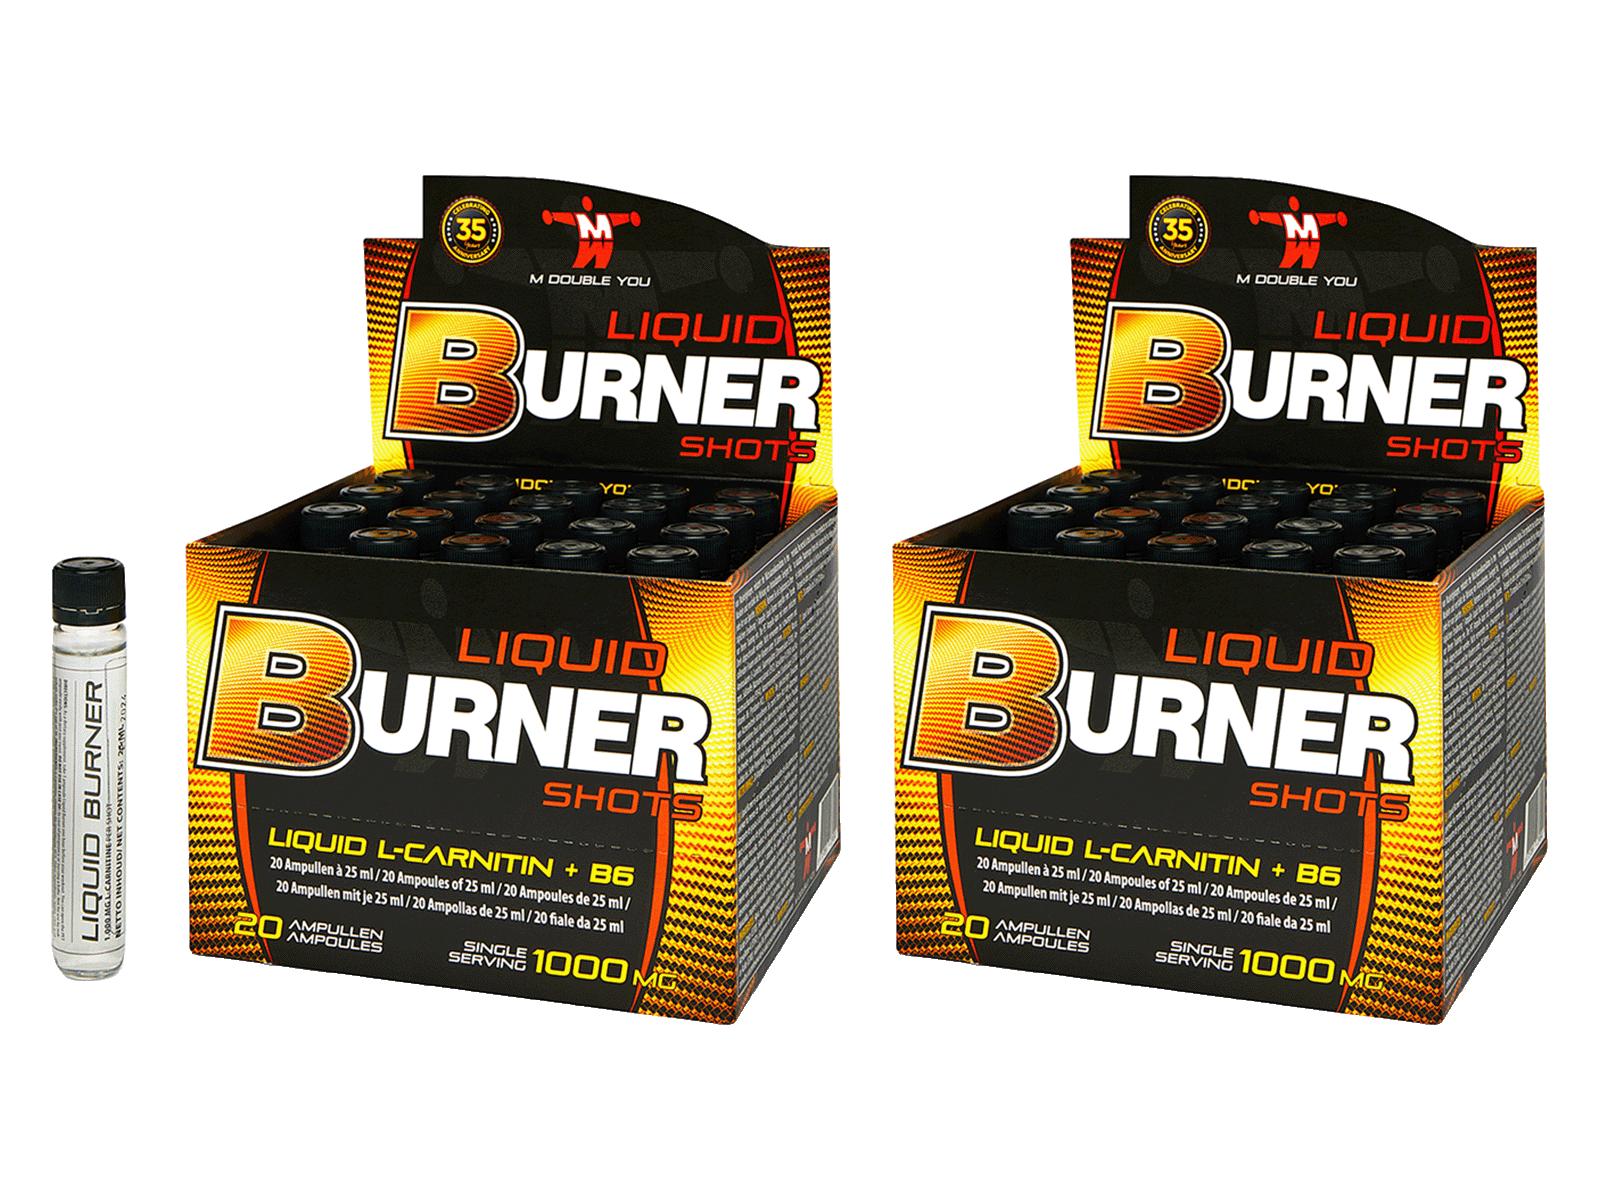 M DOUBLE YOU - Liquid Burner (20 ampullen - 2-pack)